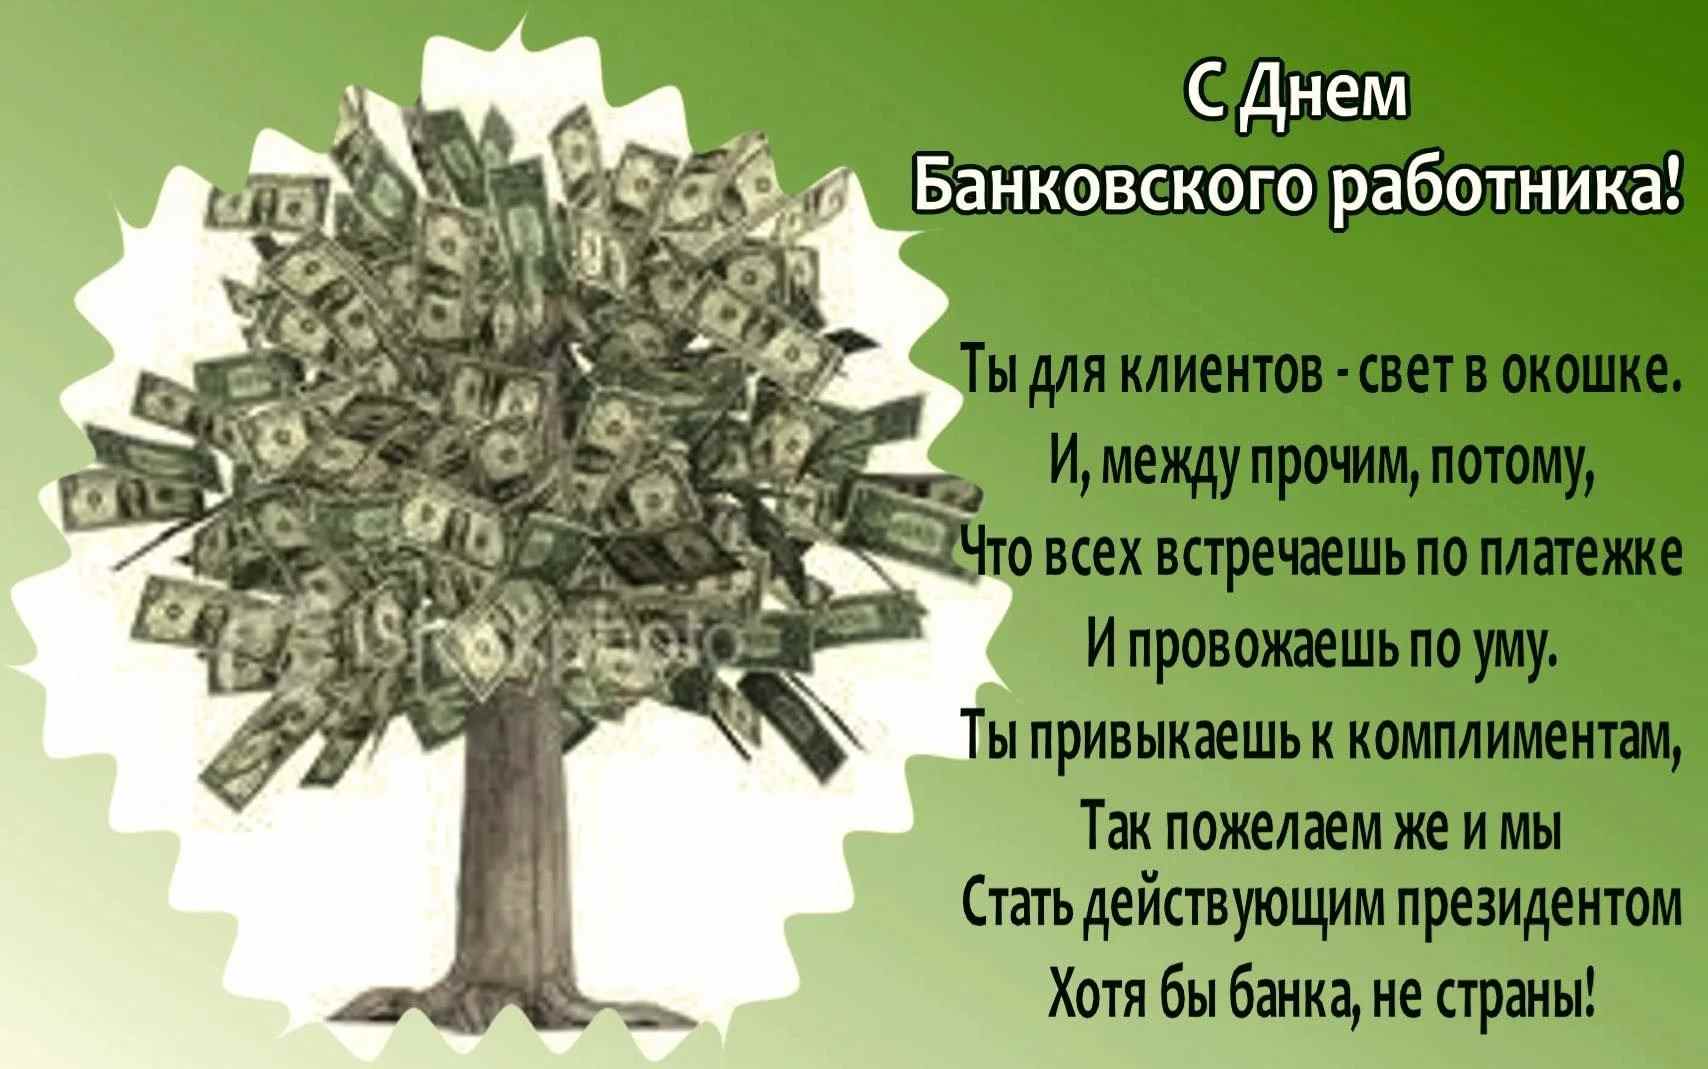 Красивые картинки на День банковского работника Армении 22 ноября 07